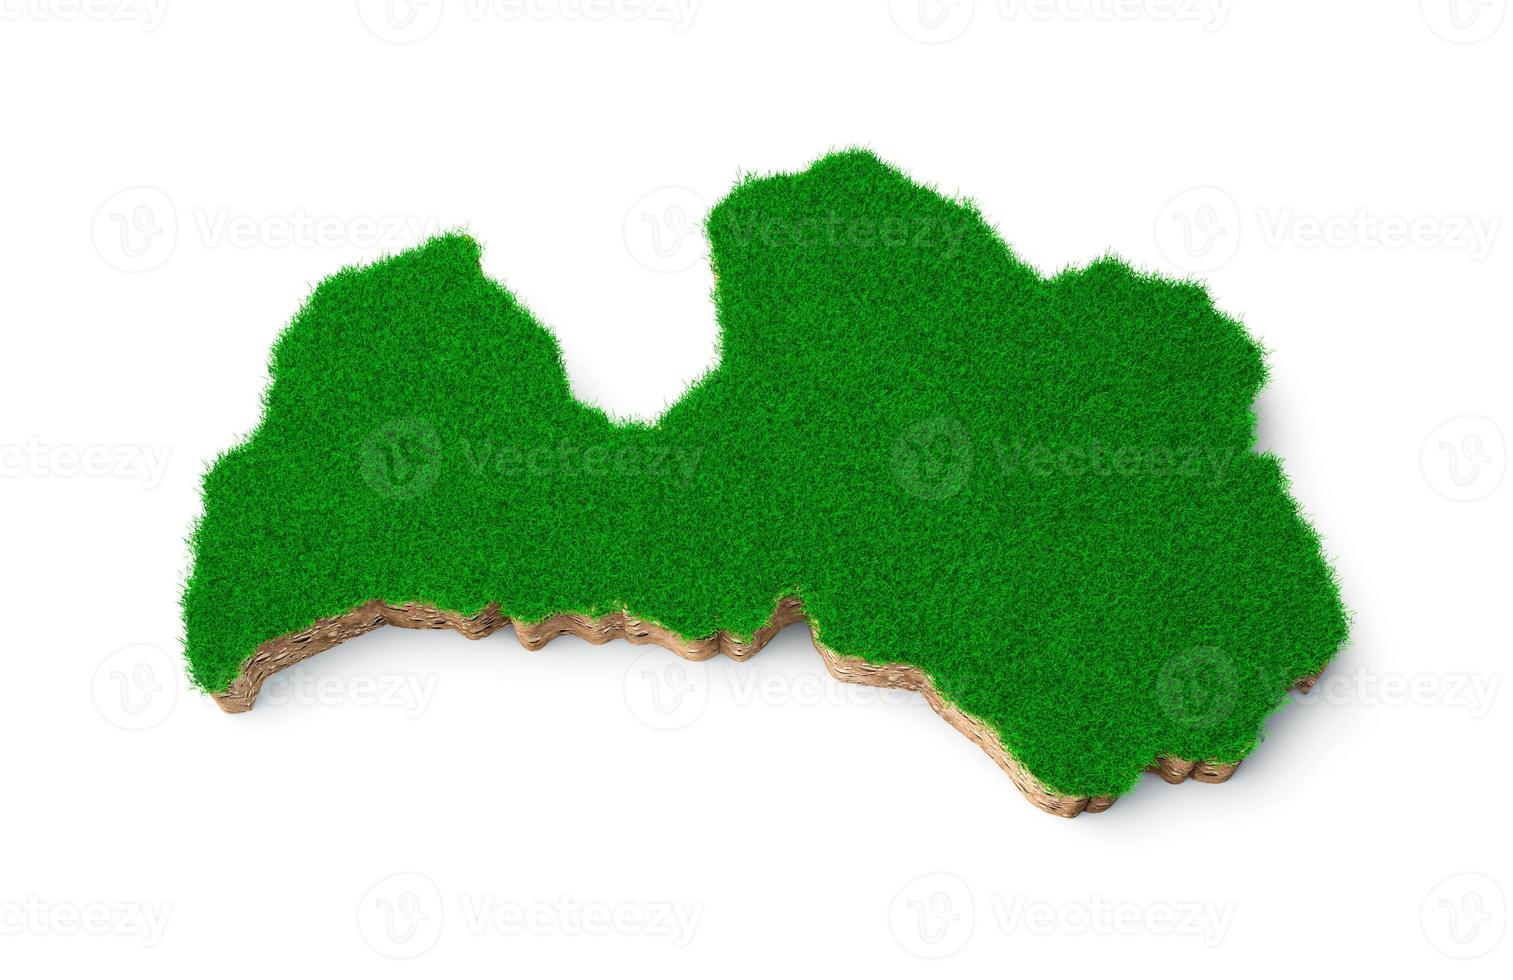 carte de la lettonie coupe transversale de la géologie des sols avec de l'herbe verte et de la texture du sol rocheux illustration 3d photo